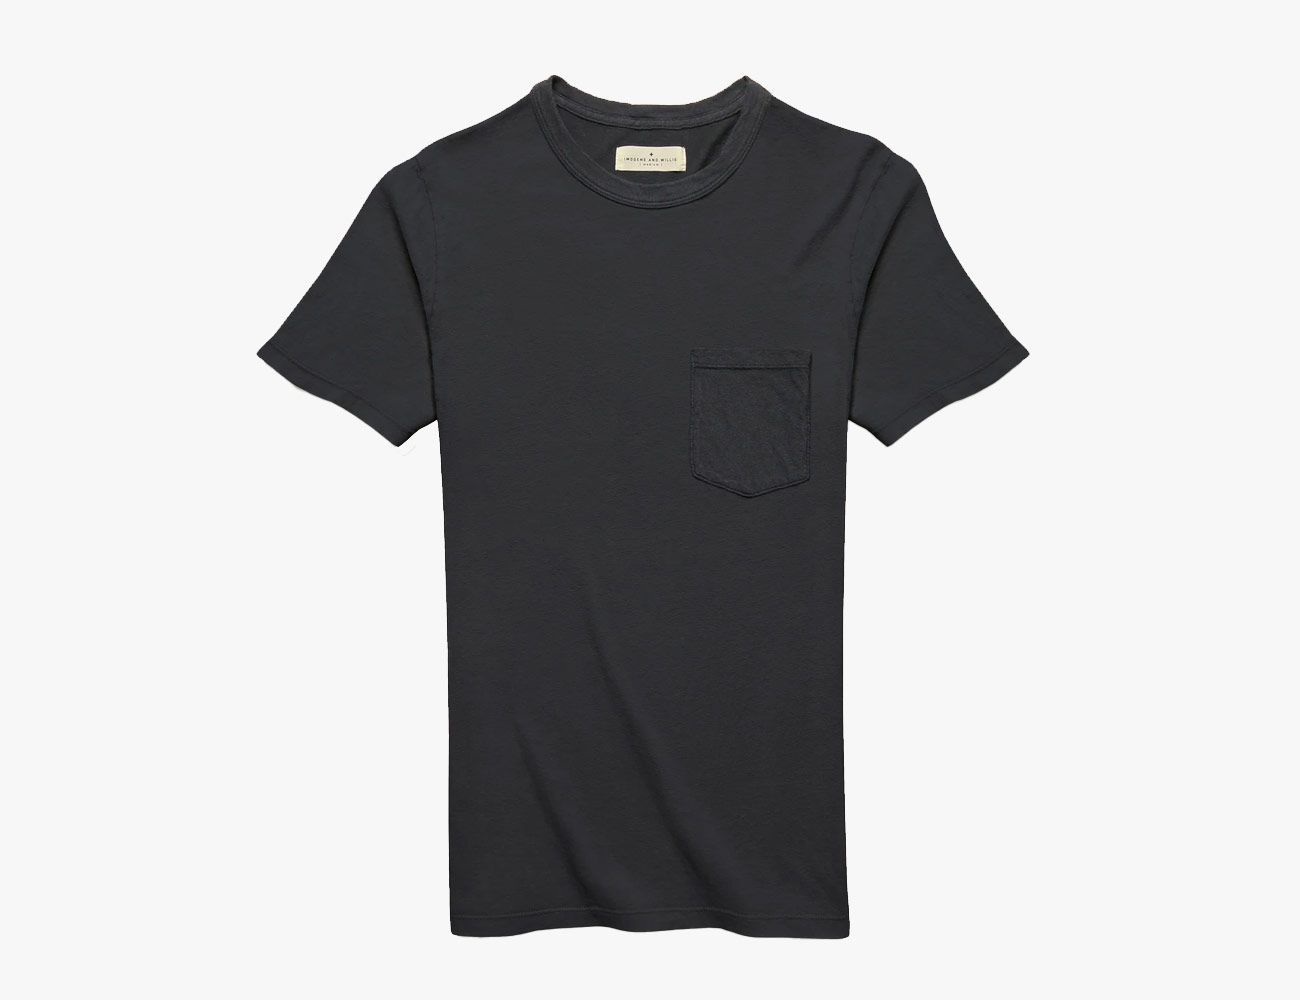 plain shirt brands